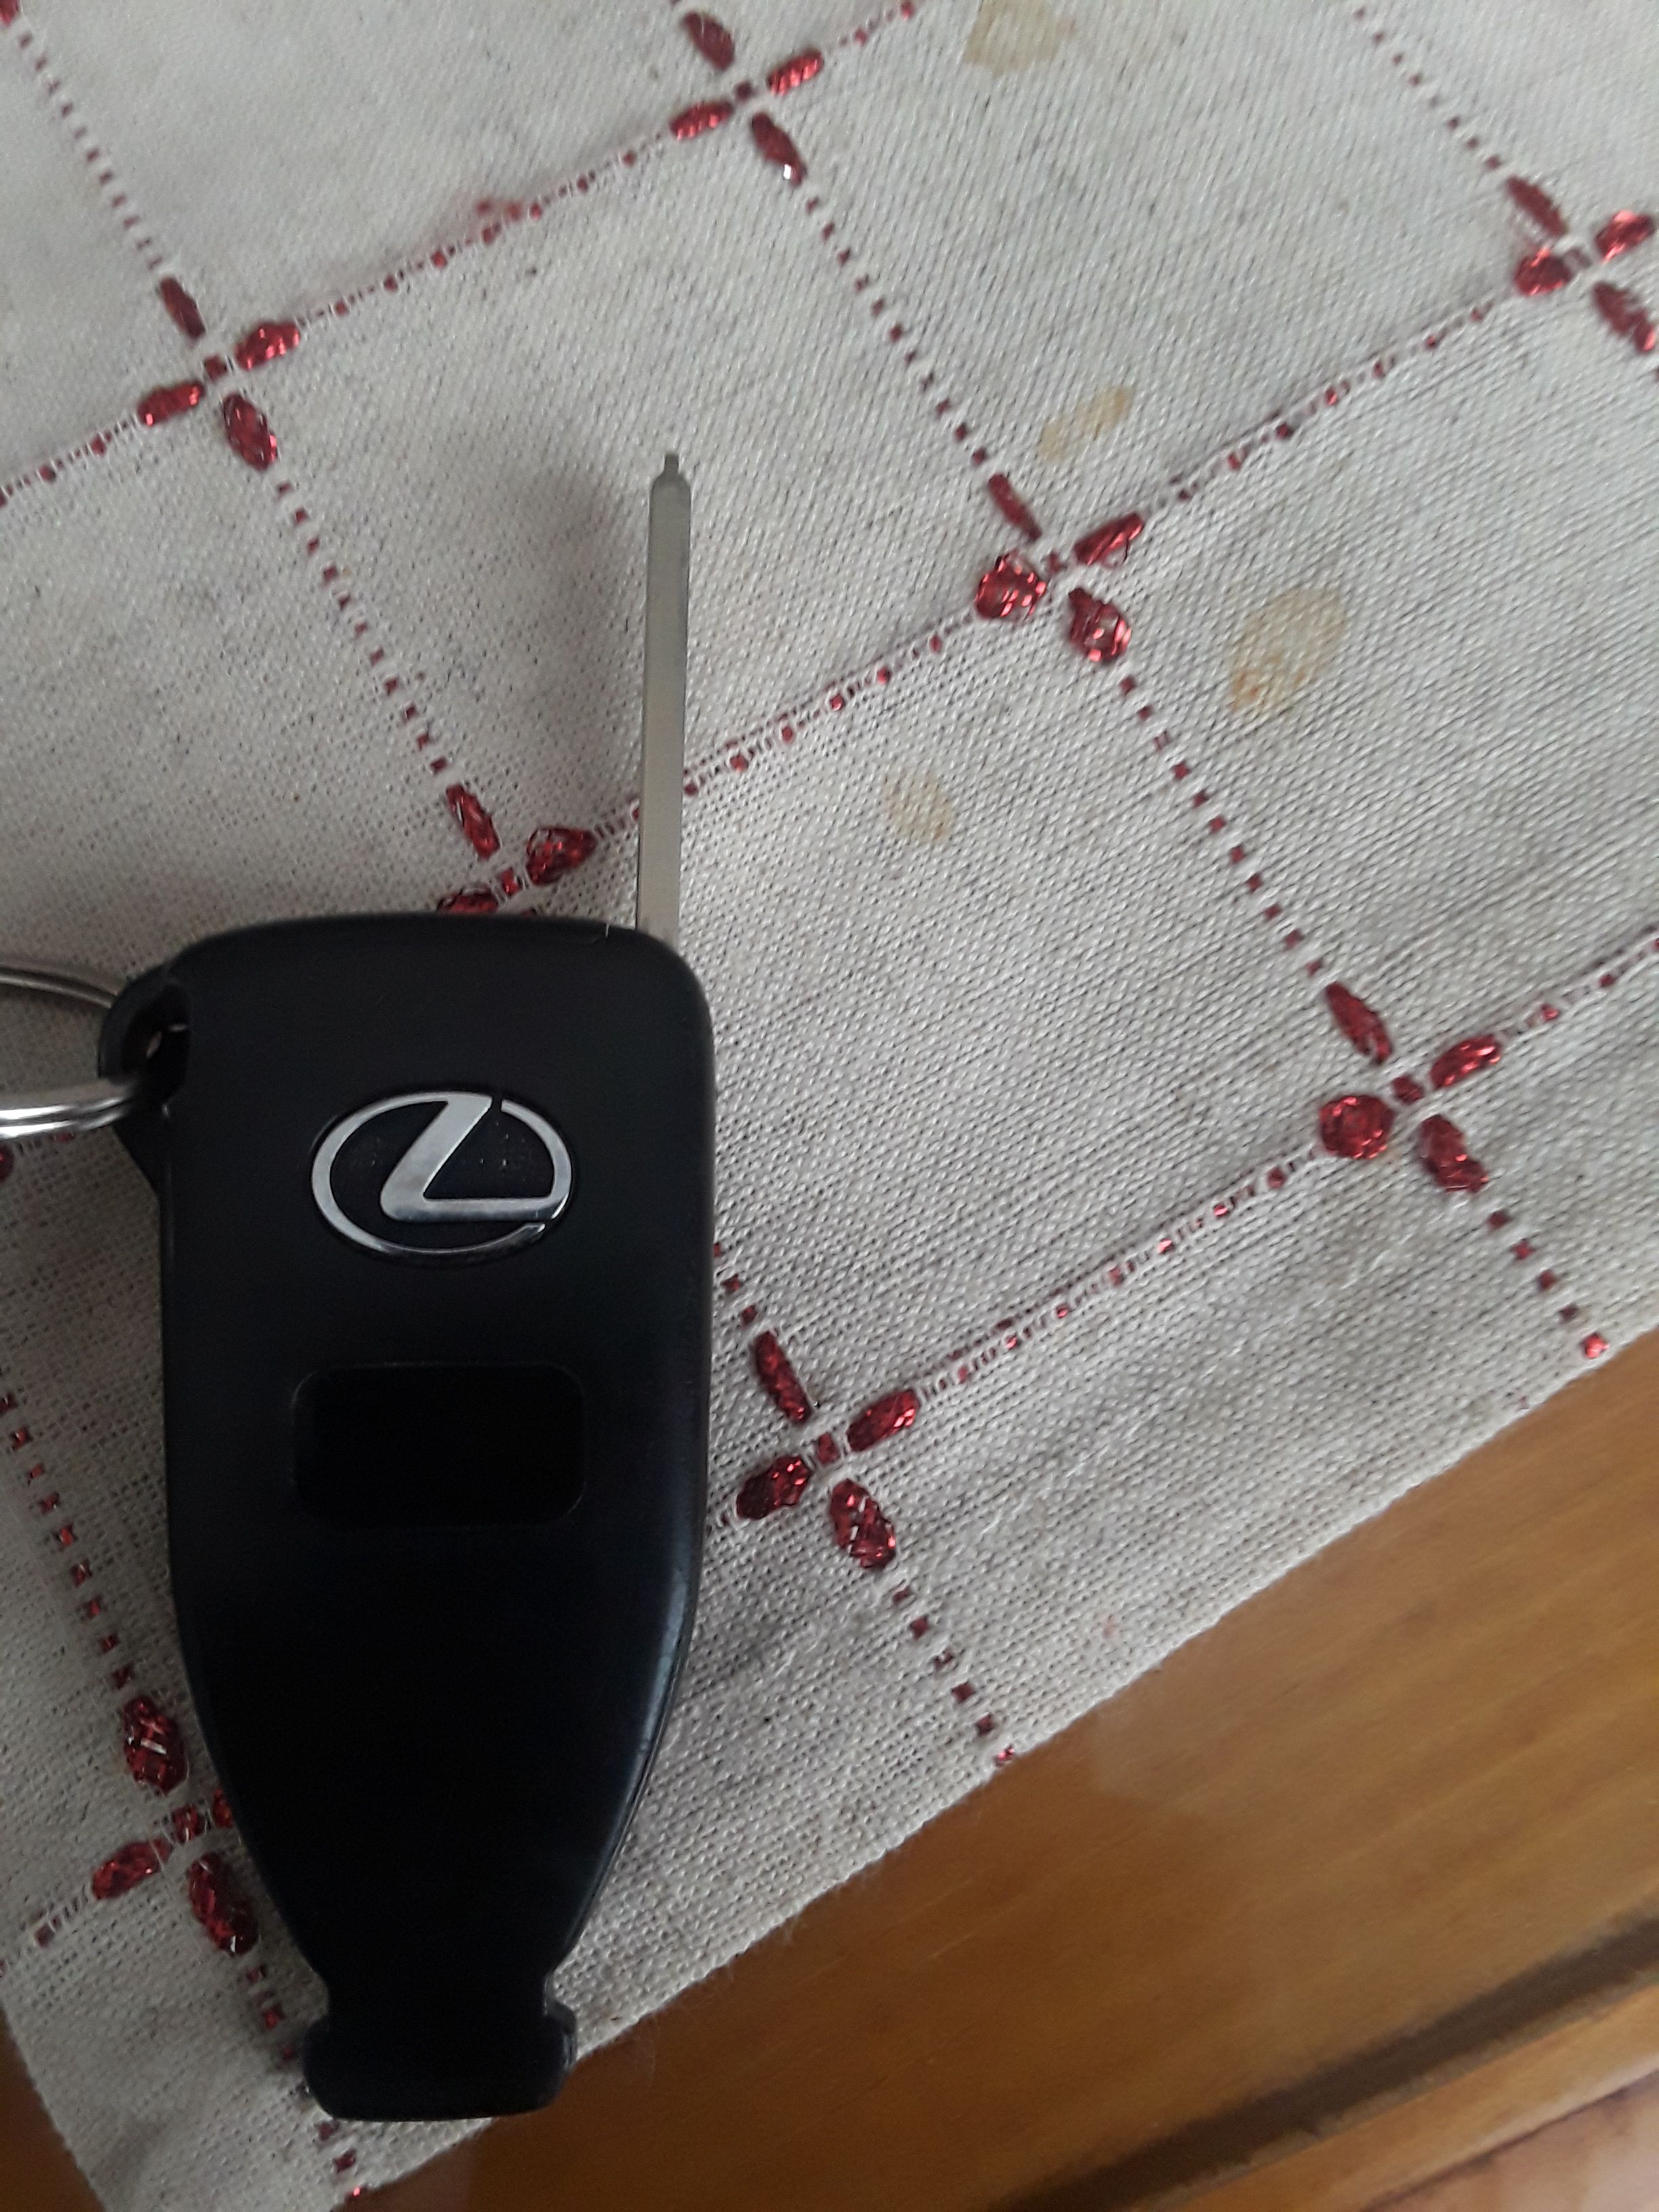 Lexus Car Key